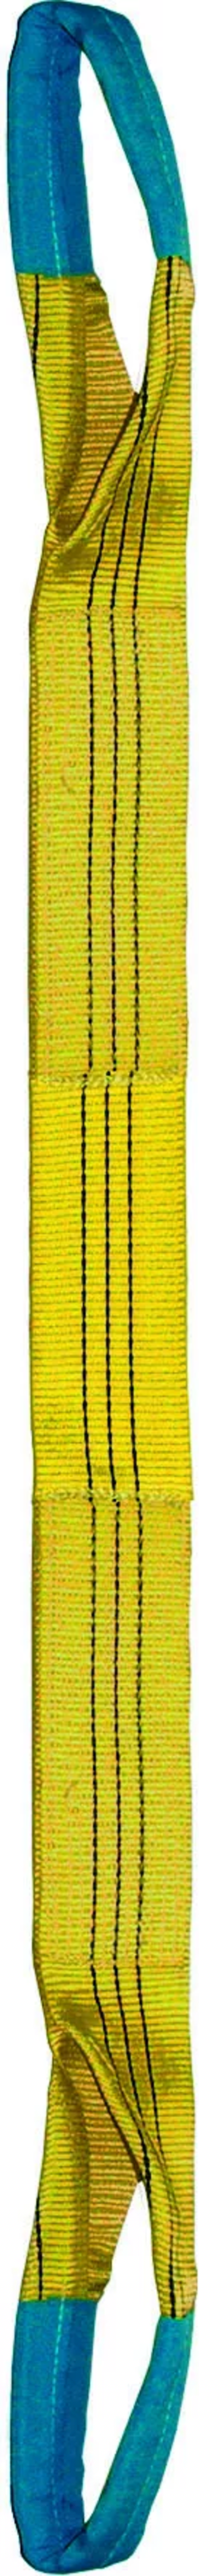 Élingue sangle double 90 mm cmu 3 t jaune boucles repliées lg. 5 m LEVAC - 4822C50